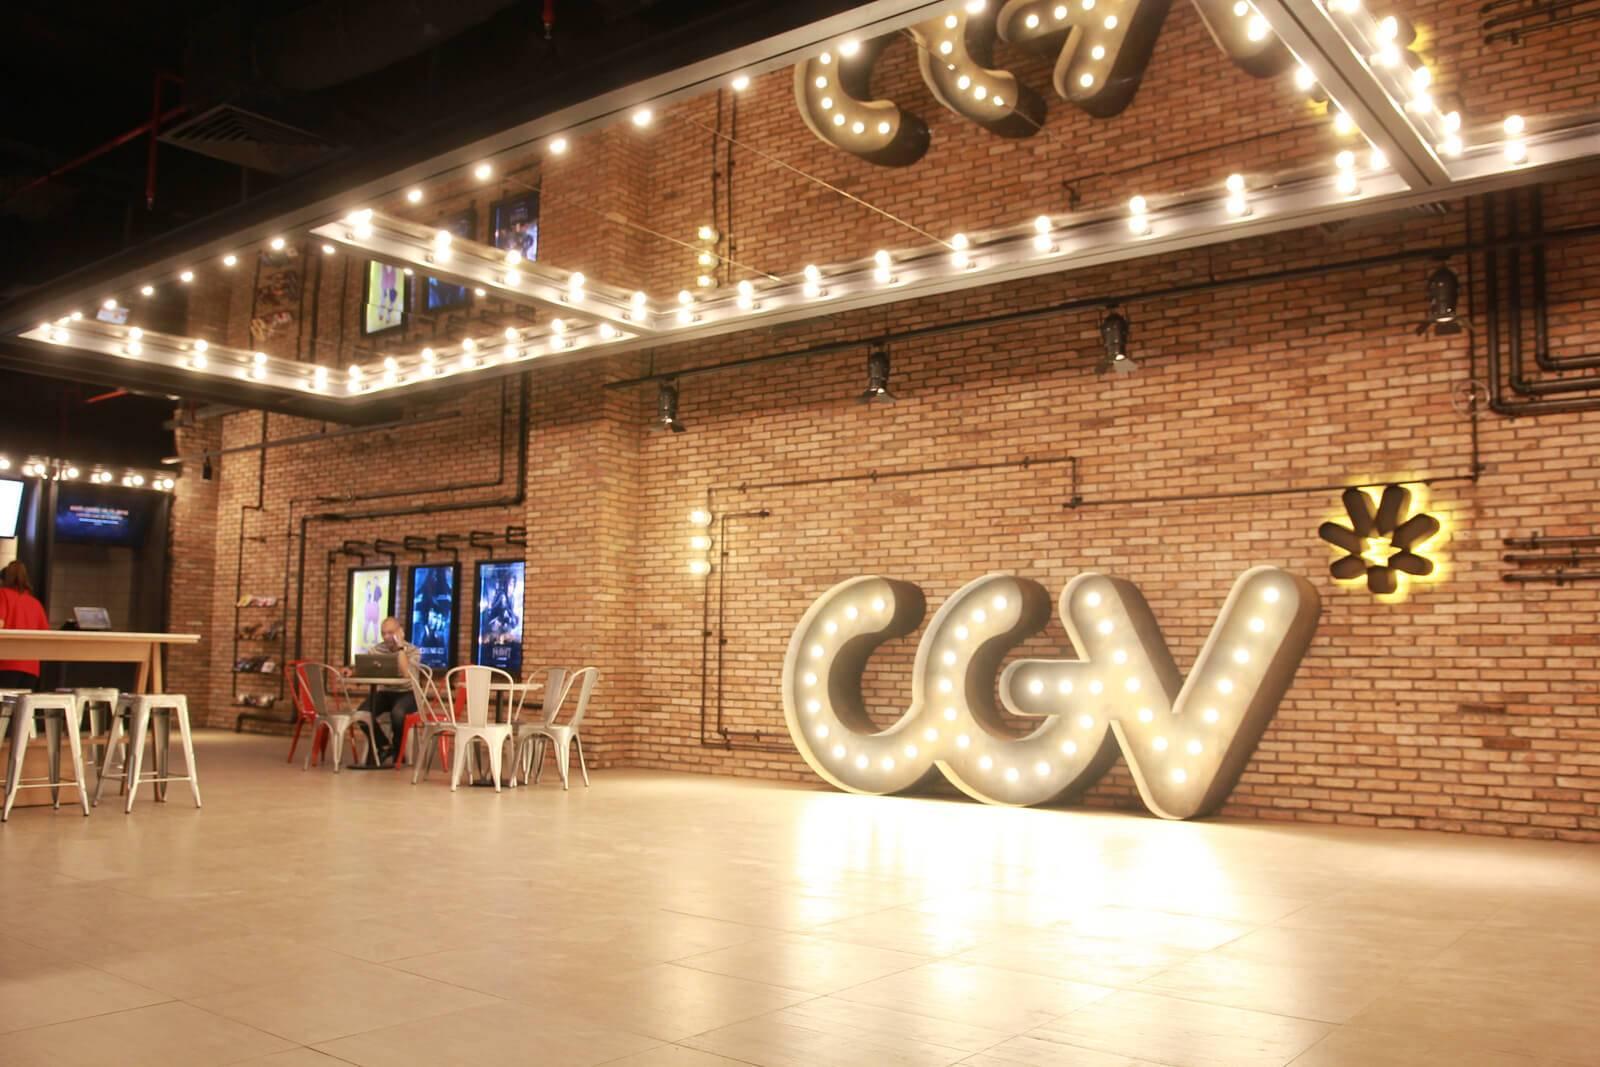 CJ CGV Vietnam